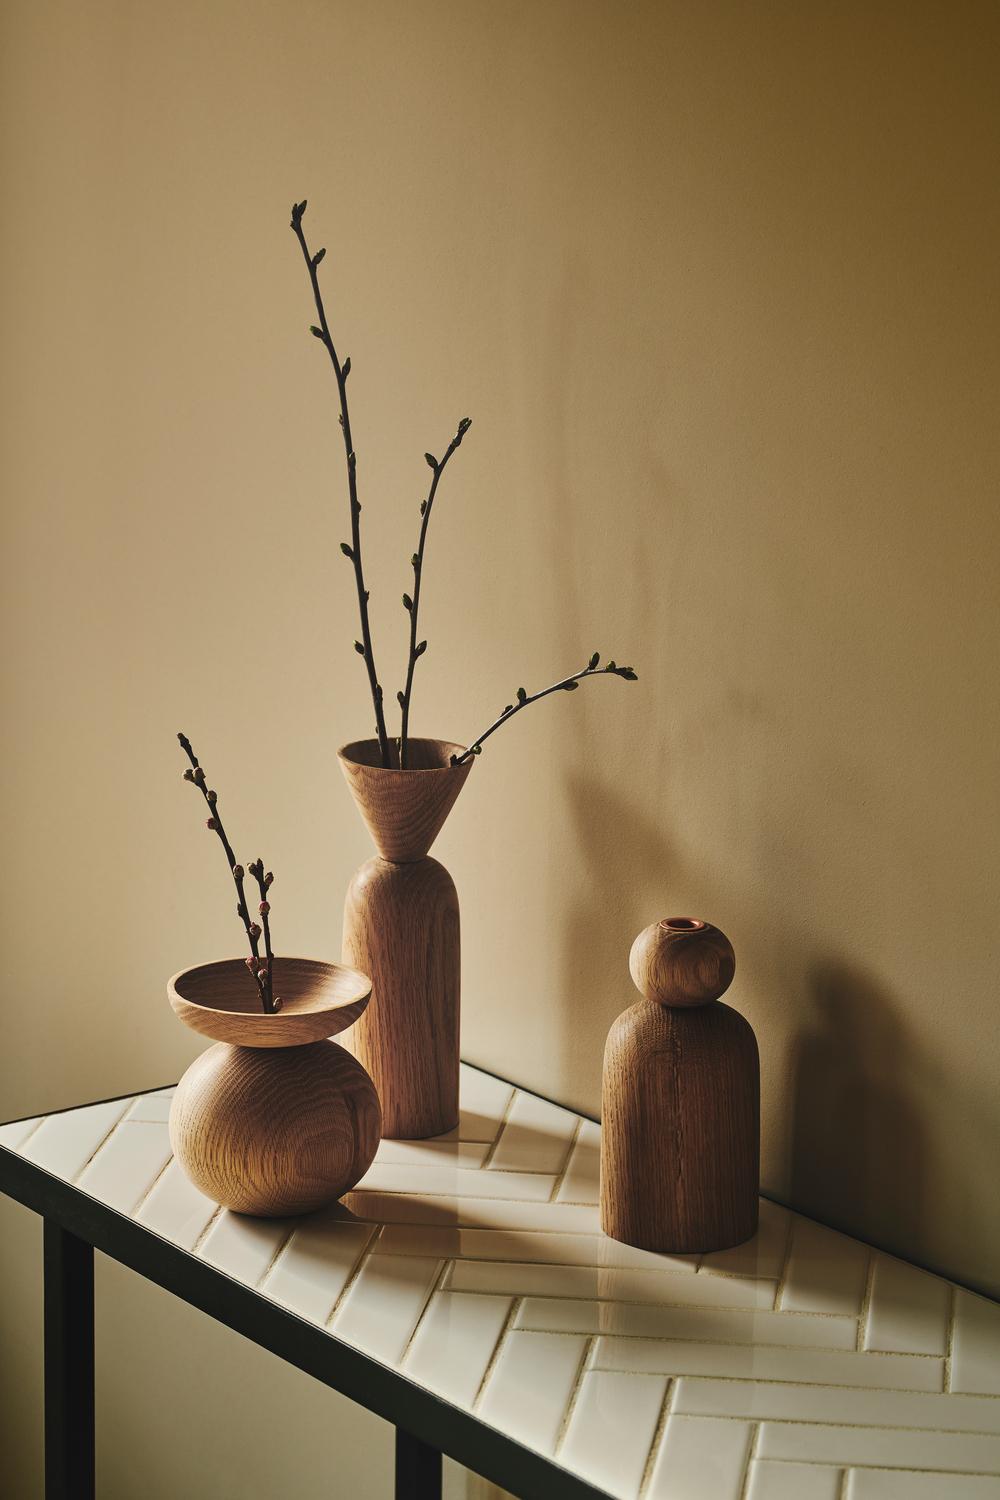 Vase en forme de cône en Oak Oak fumé par Applicata
Dimensions : D 9 x L 9 x H 25 cm
MATERIAL : Chêne fumé.

Disponible en forme de boule, de cône et de bol.
Disponible en chêne, chêne fumé et chêne teinté noir.

La collection de vases Shape est une